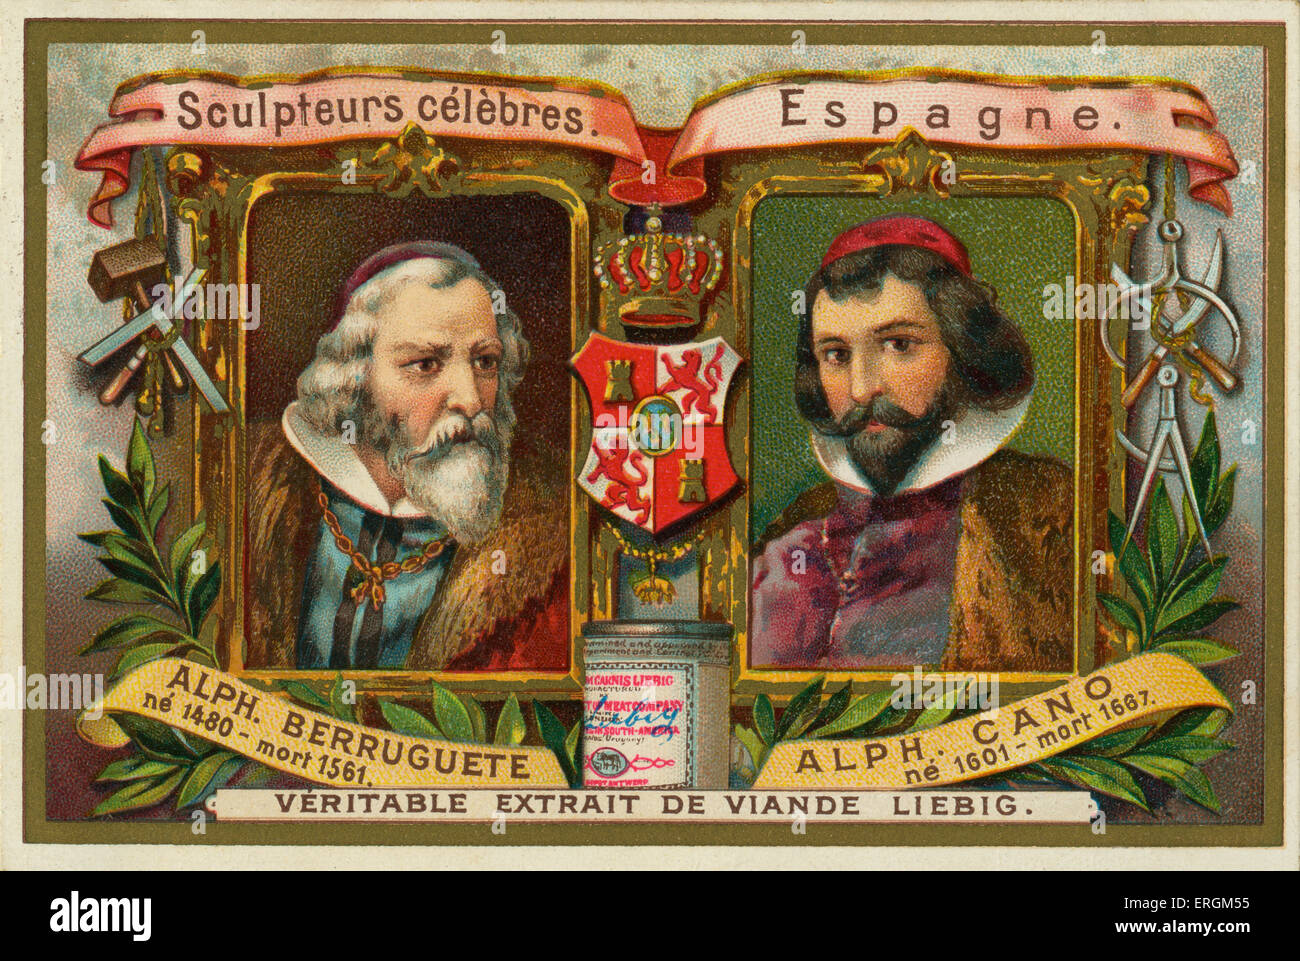 Alonso Berruguete (1480-1561) und Alonso Cano (1601-1667) - berühmte spanische Bildhauer. Liebig-Karte, berühmter Bildhauer, 1897. Stockfoto